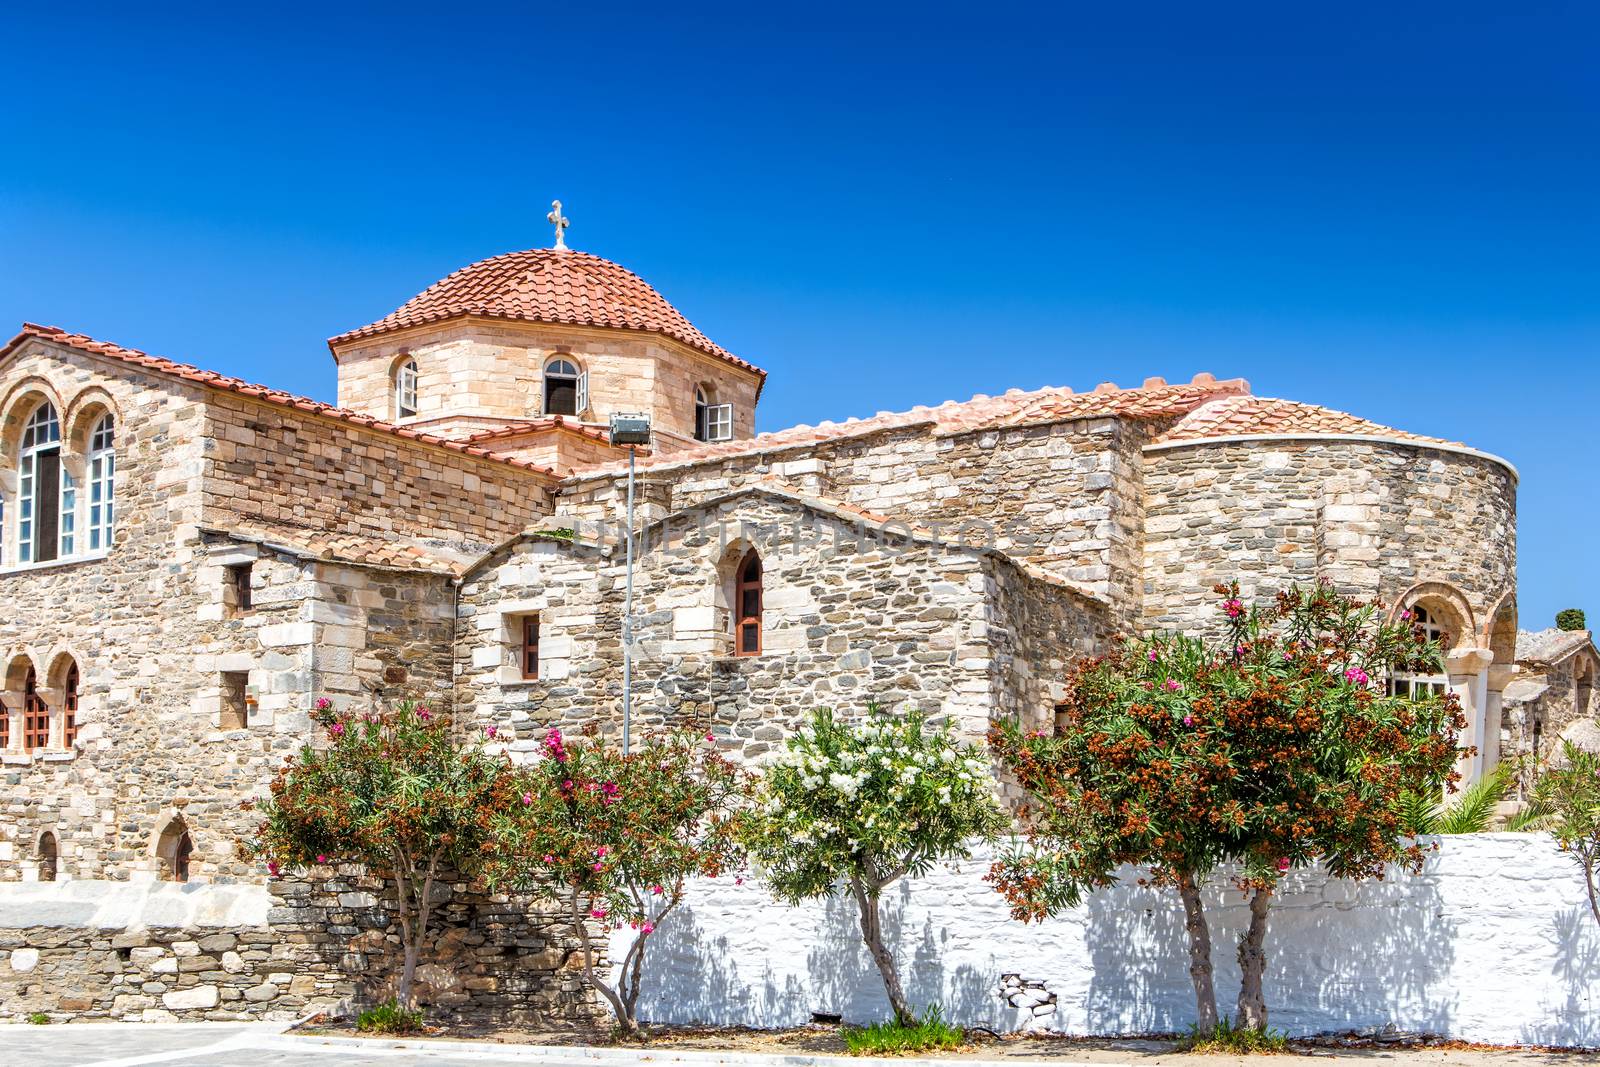 The Ekatontapiliani church in Parikia old town, Paros by mitakag